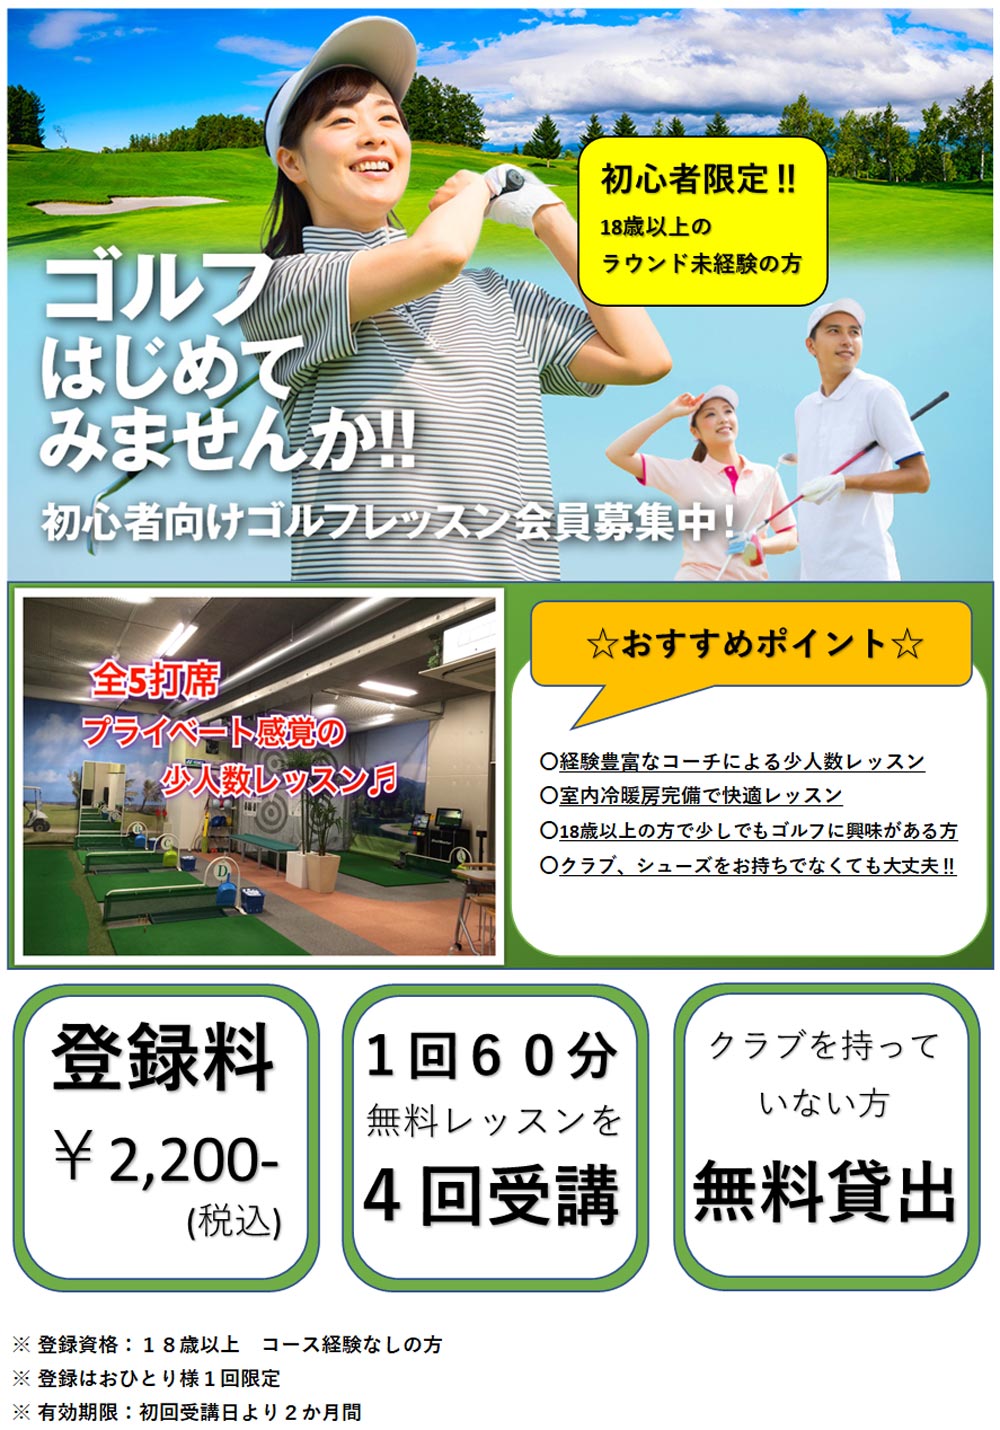 おためしレッスン　 | ゴルフゾーン戸坂 | Golf Tennis ZONE Hesaka